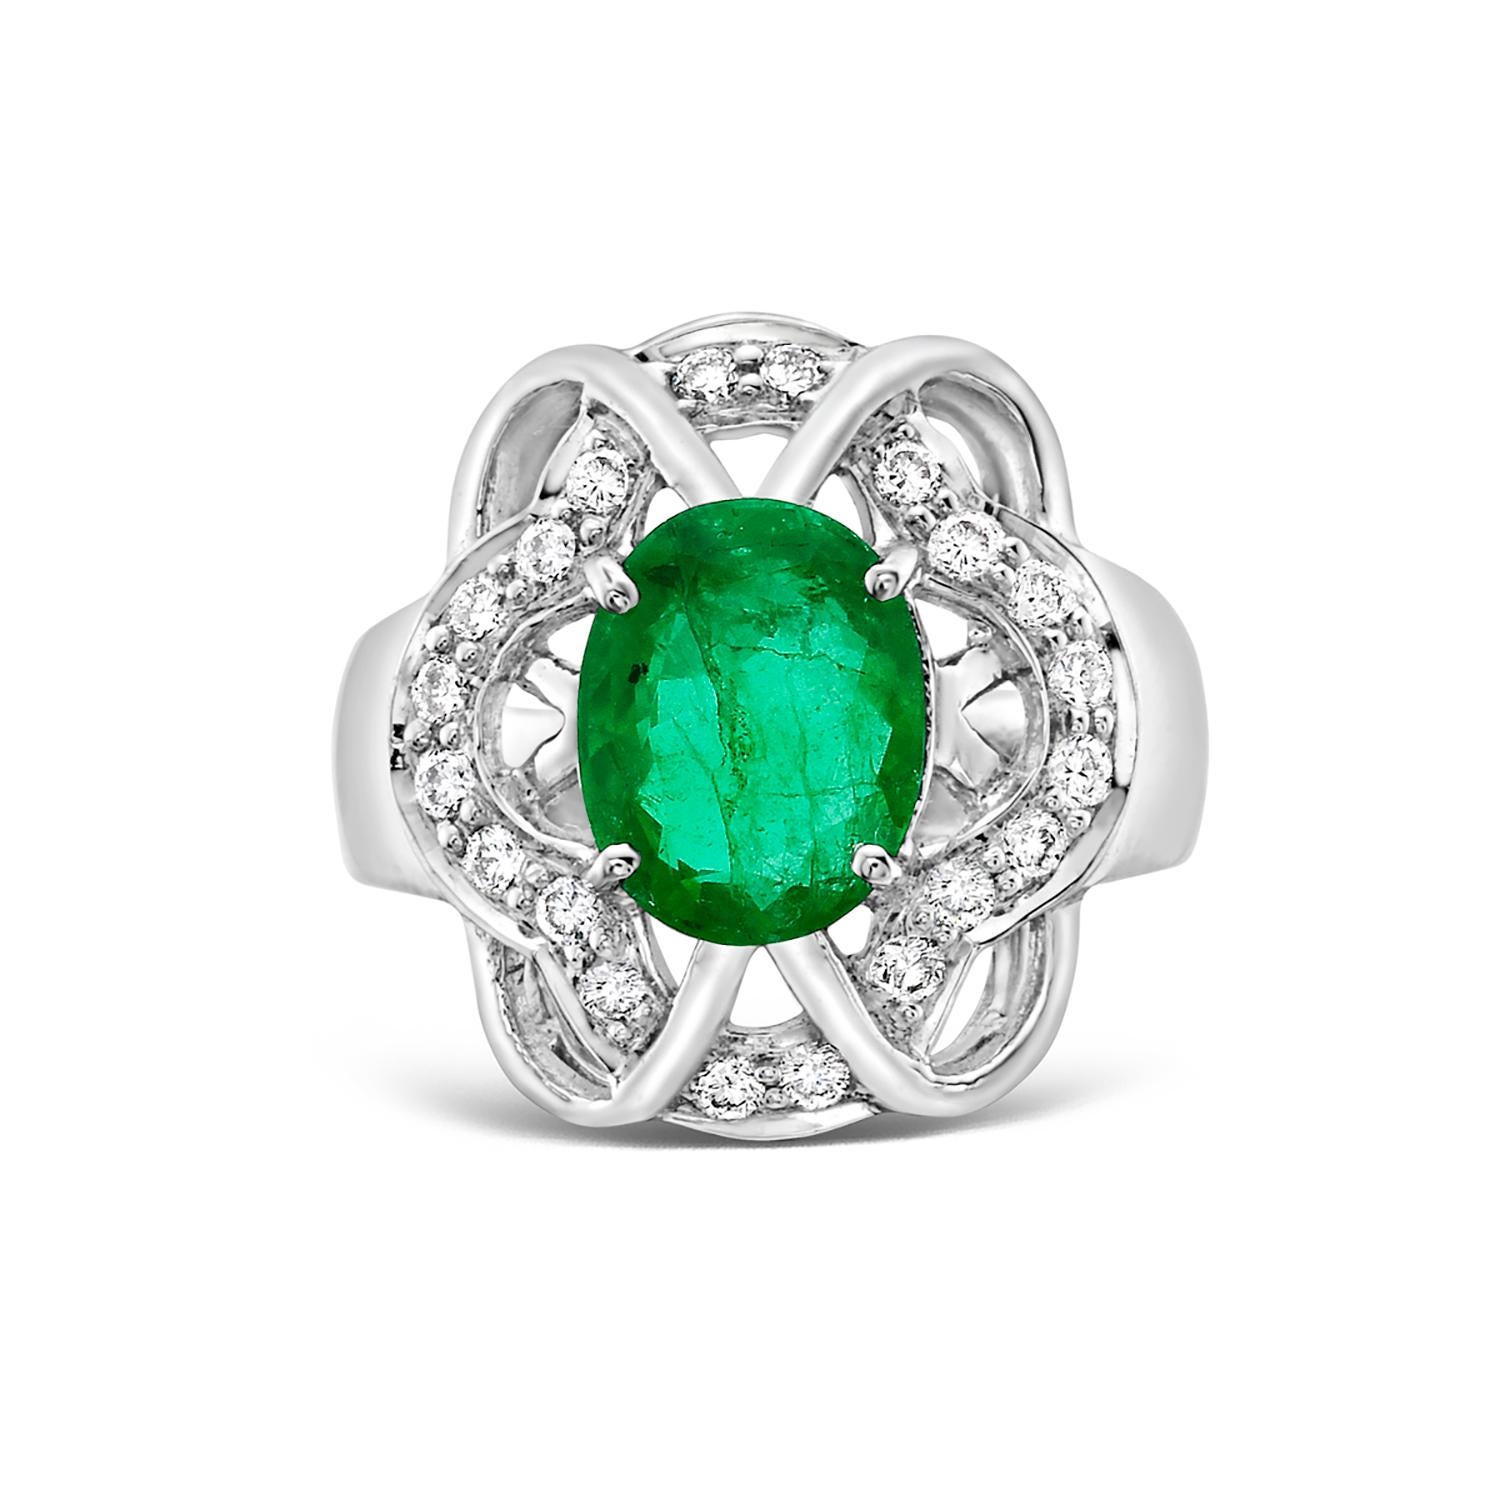 Bringen Sie einen Hauch von Eleganz an Ihren Finger mit diesem exquisiten sambischen Smaragdring. Mit einem wunderschönen ovalen Smaragd, umgeben von illusionistischen Diamanten, gefasst in 18 Karat Weißgold. Die Kombination aus dem leuchtend grünen